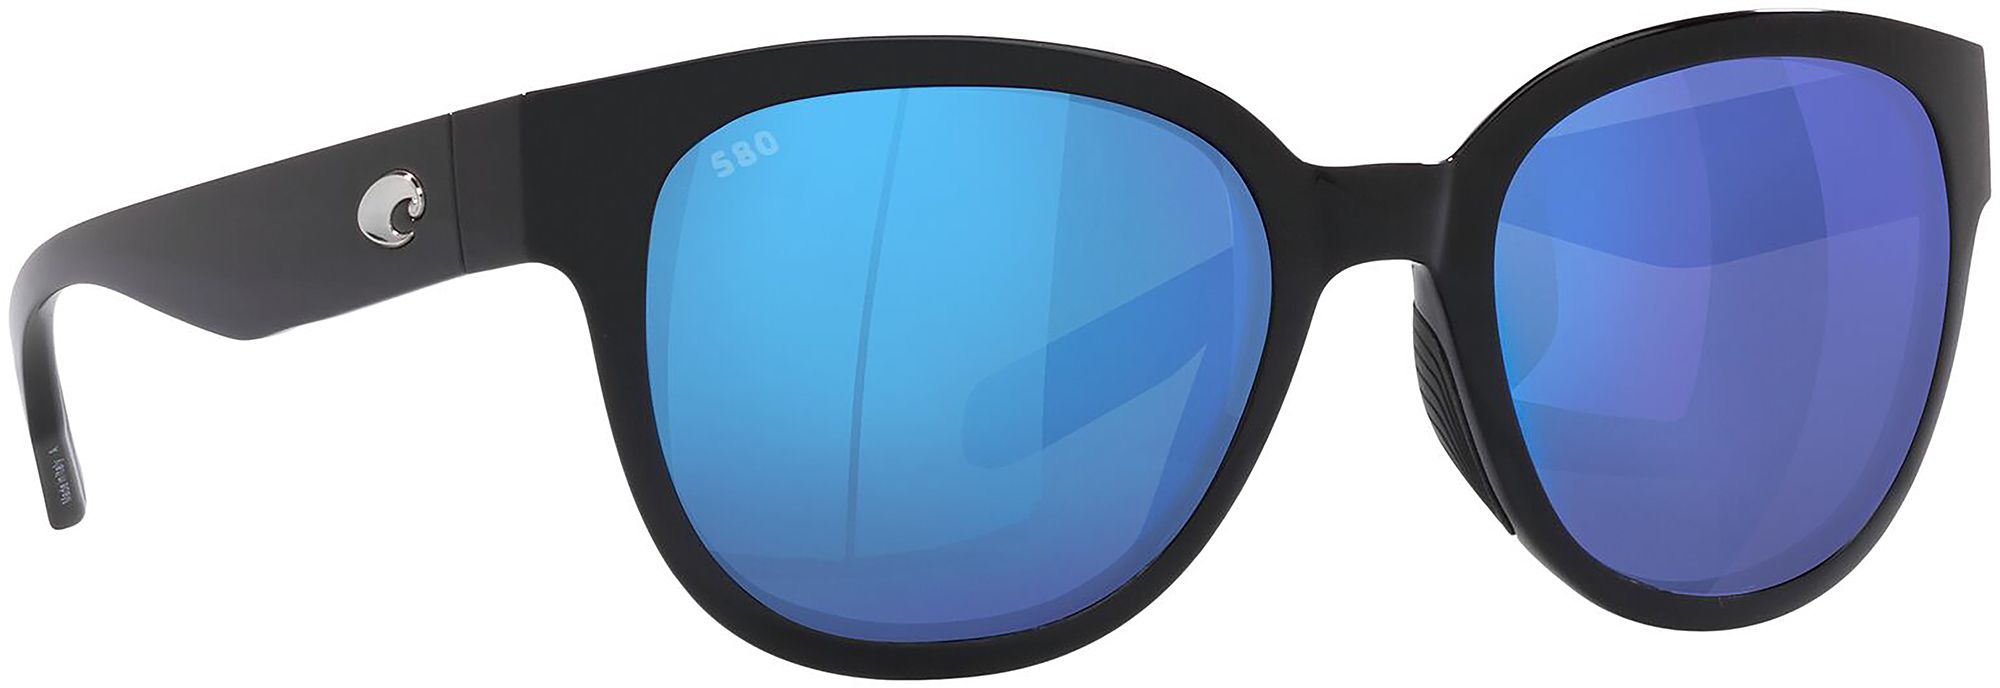 Costa Del Mar Salina Sunglasses